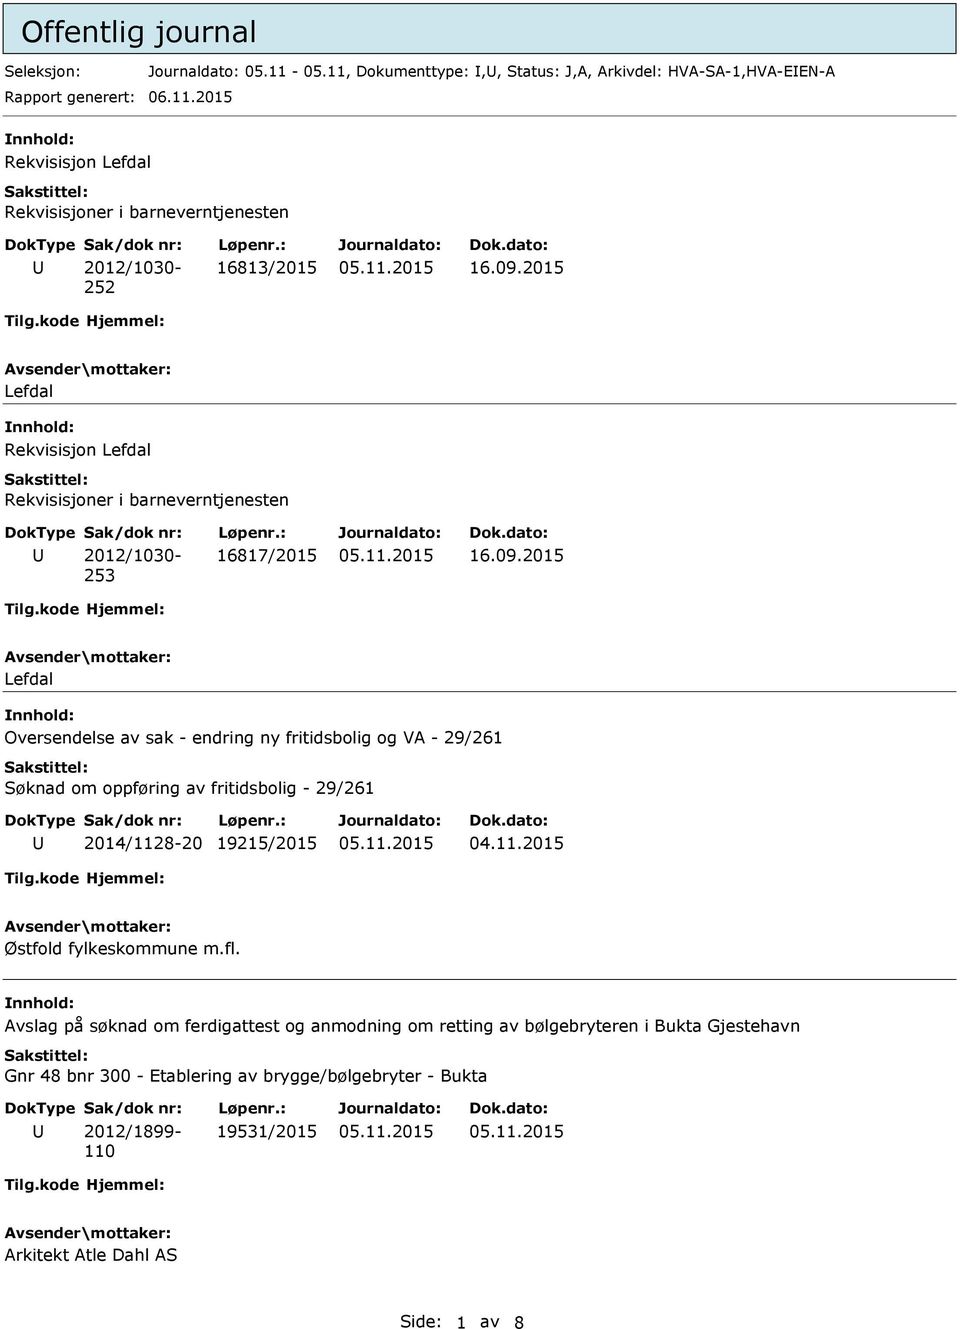 fl. Avslag på søknad om ferdigattest og anmodning om retting av bølgebryteren i Bukta Gjestehavn Gnr 48 bnr 300 - Etablering av brygge/bølgebryter - Bukta 2012/1899-110